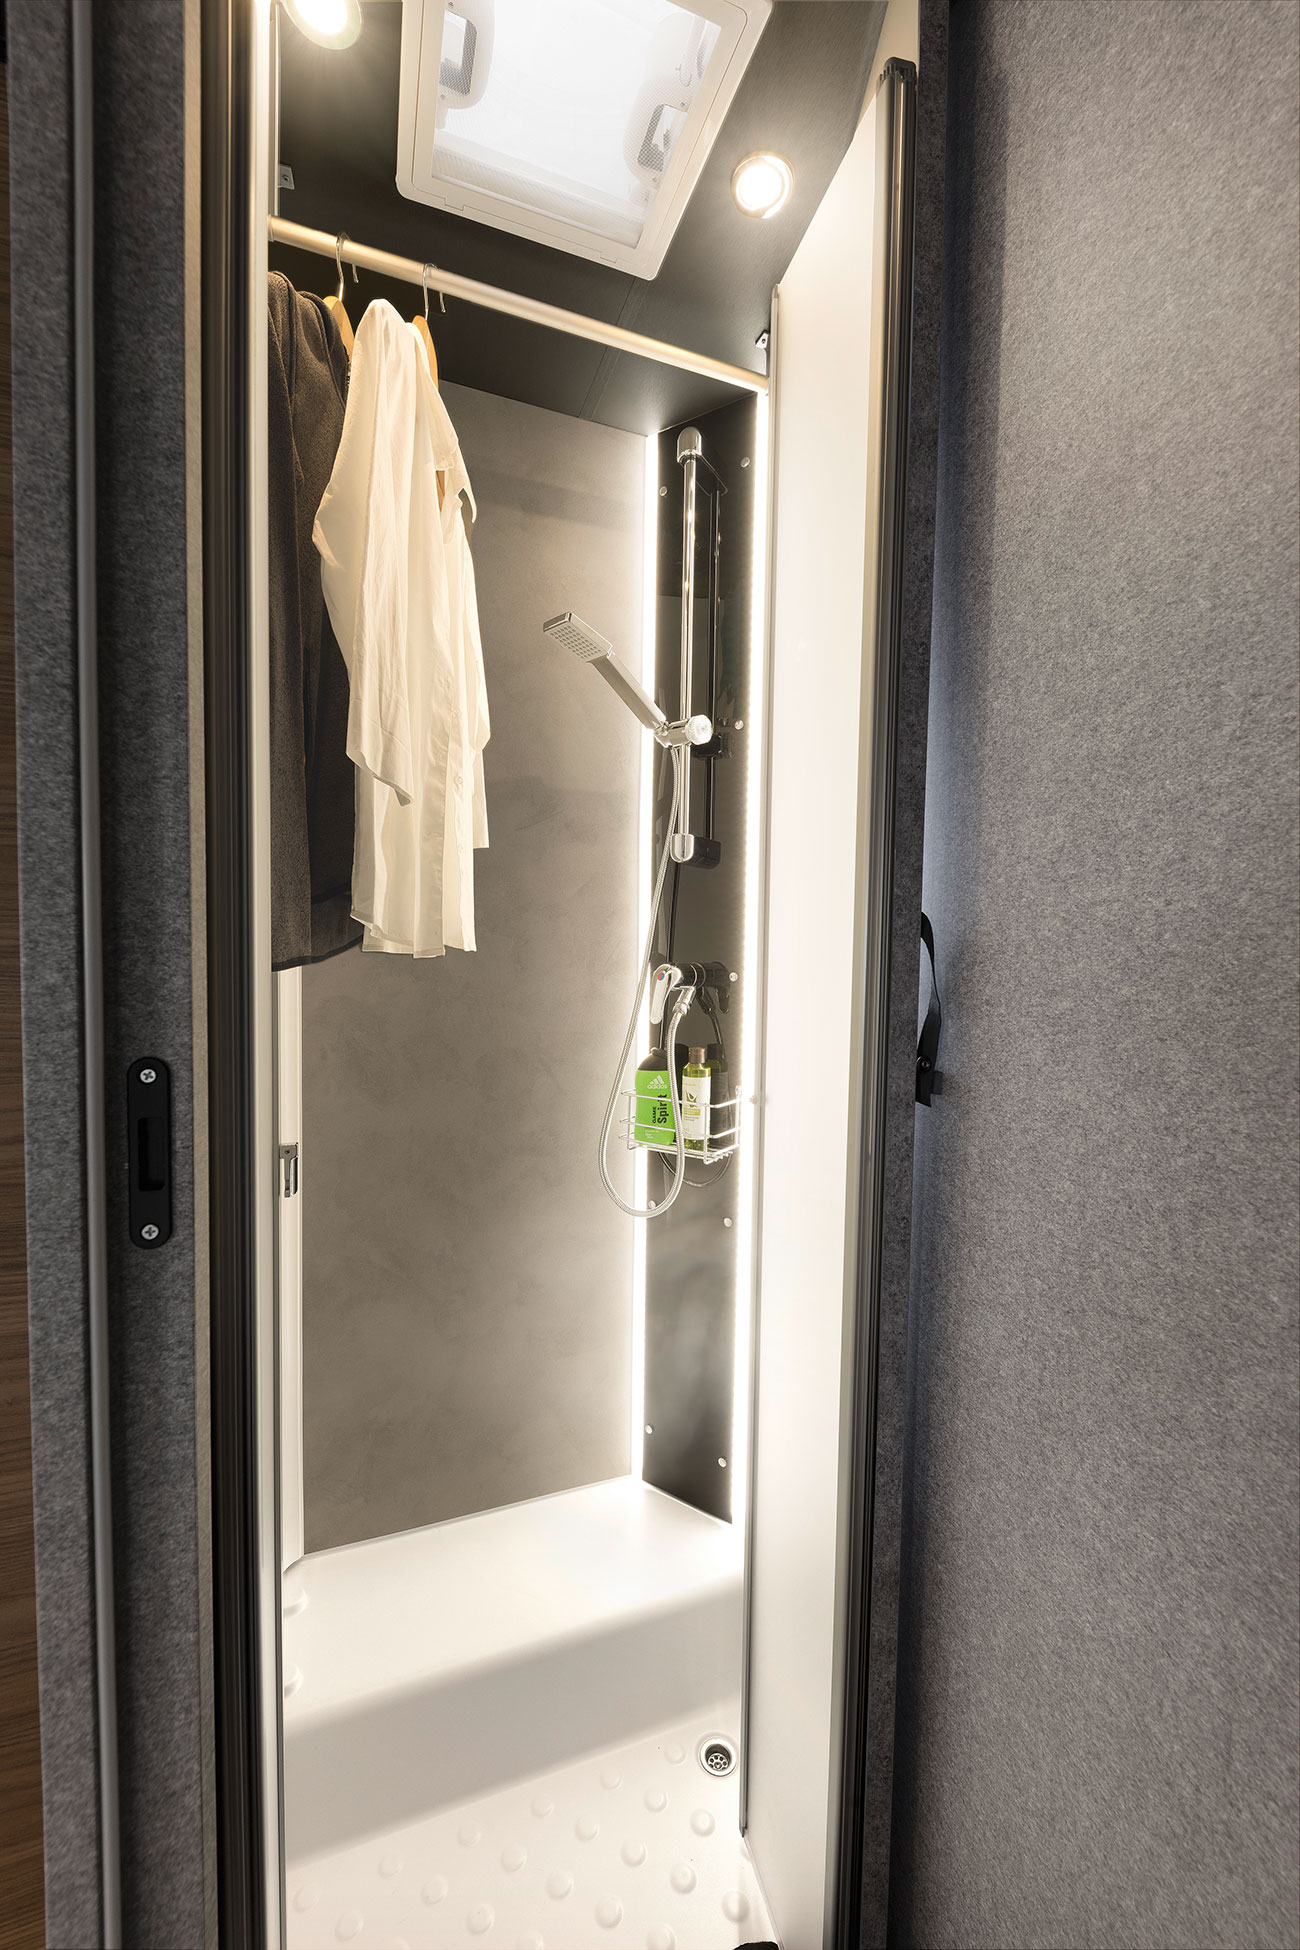 Als de doucheruimte niet in gebruik is, wordt het een droogruimte voor natte kleren of gewoon een verlengstuk van de garderobekast.